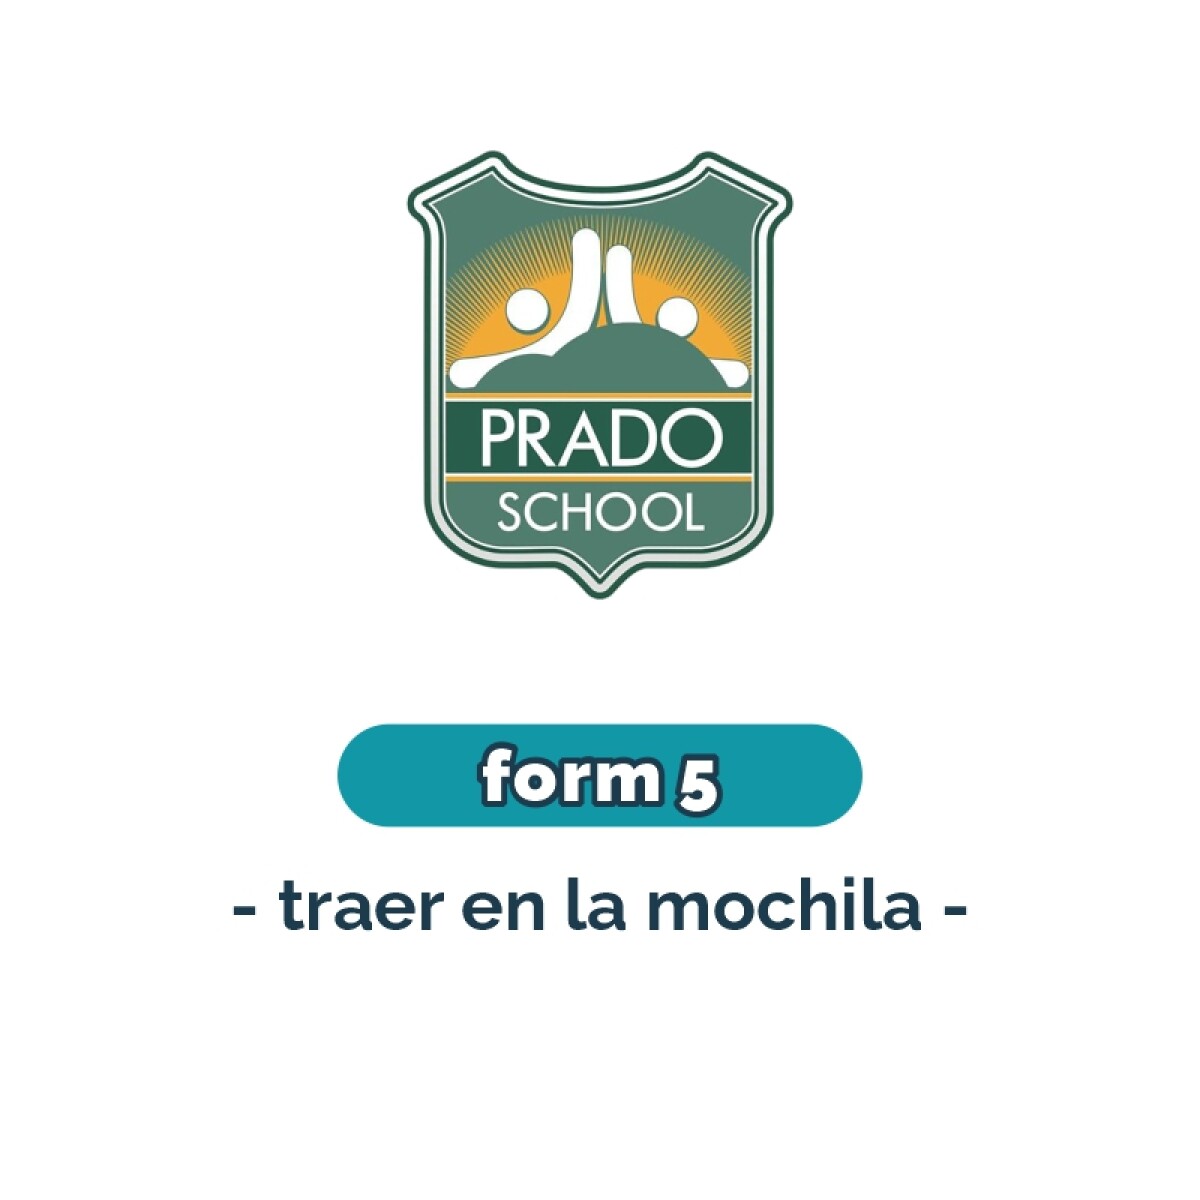 Lista de materiales - Primaria Form 5 Prado School 